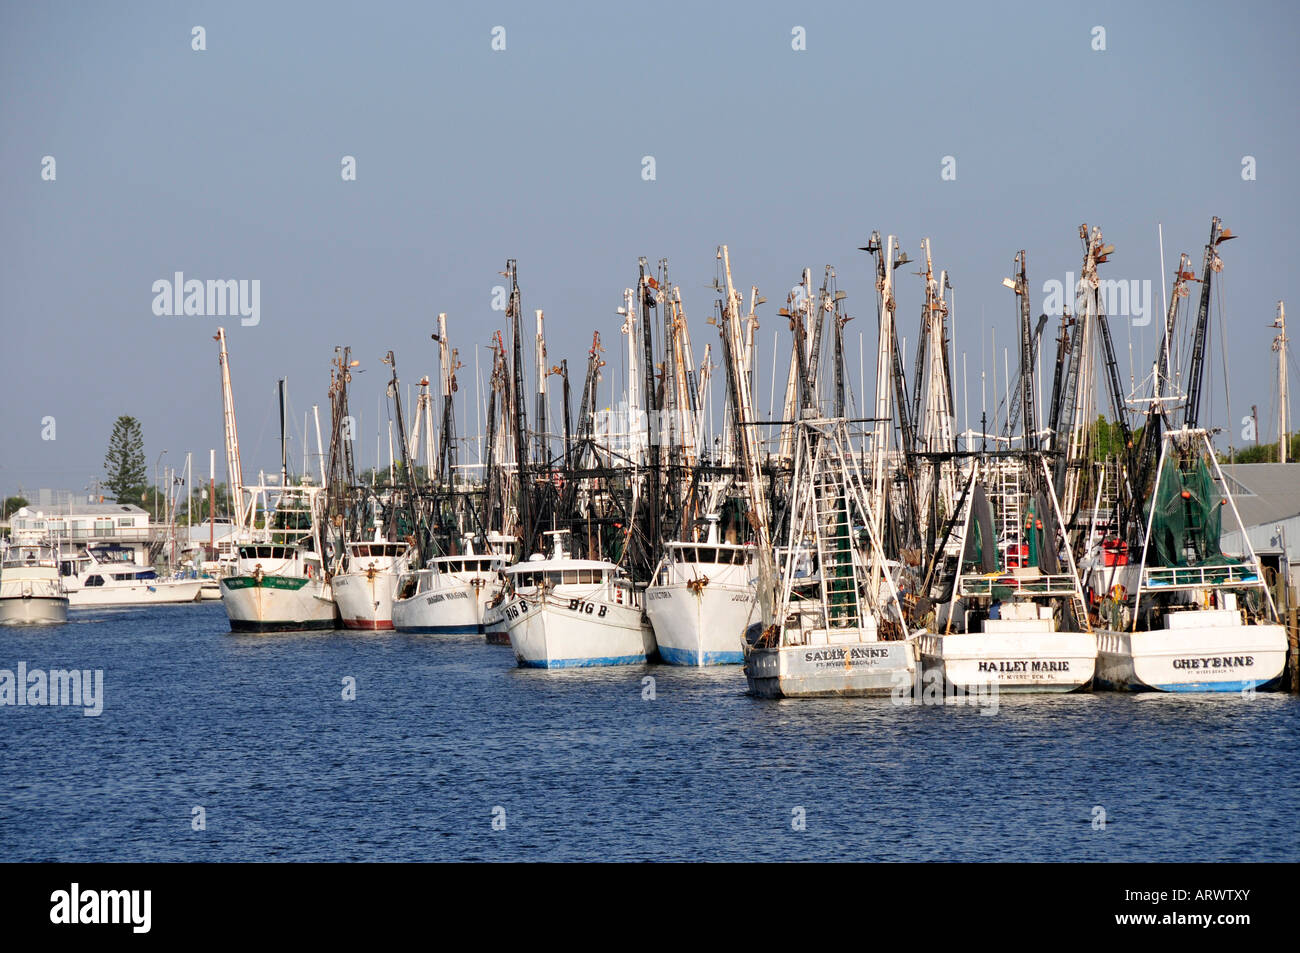 La flotte de pêche dans le port à Fort Ft Myers Beach Florida Intercoastal Waterway FL US États-Unis navires bateaux Banque D'Images